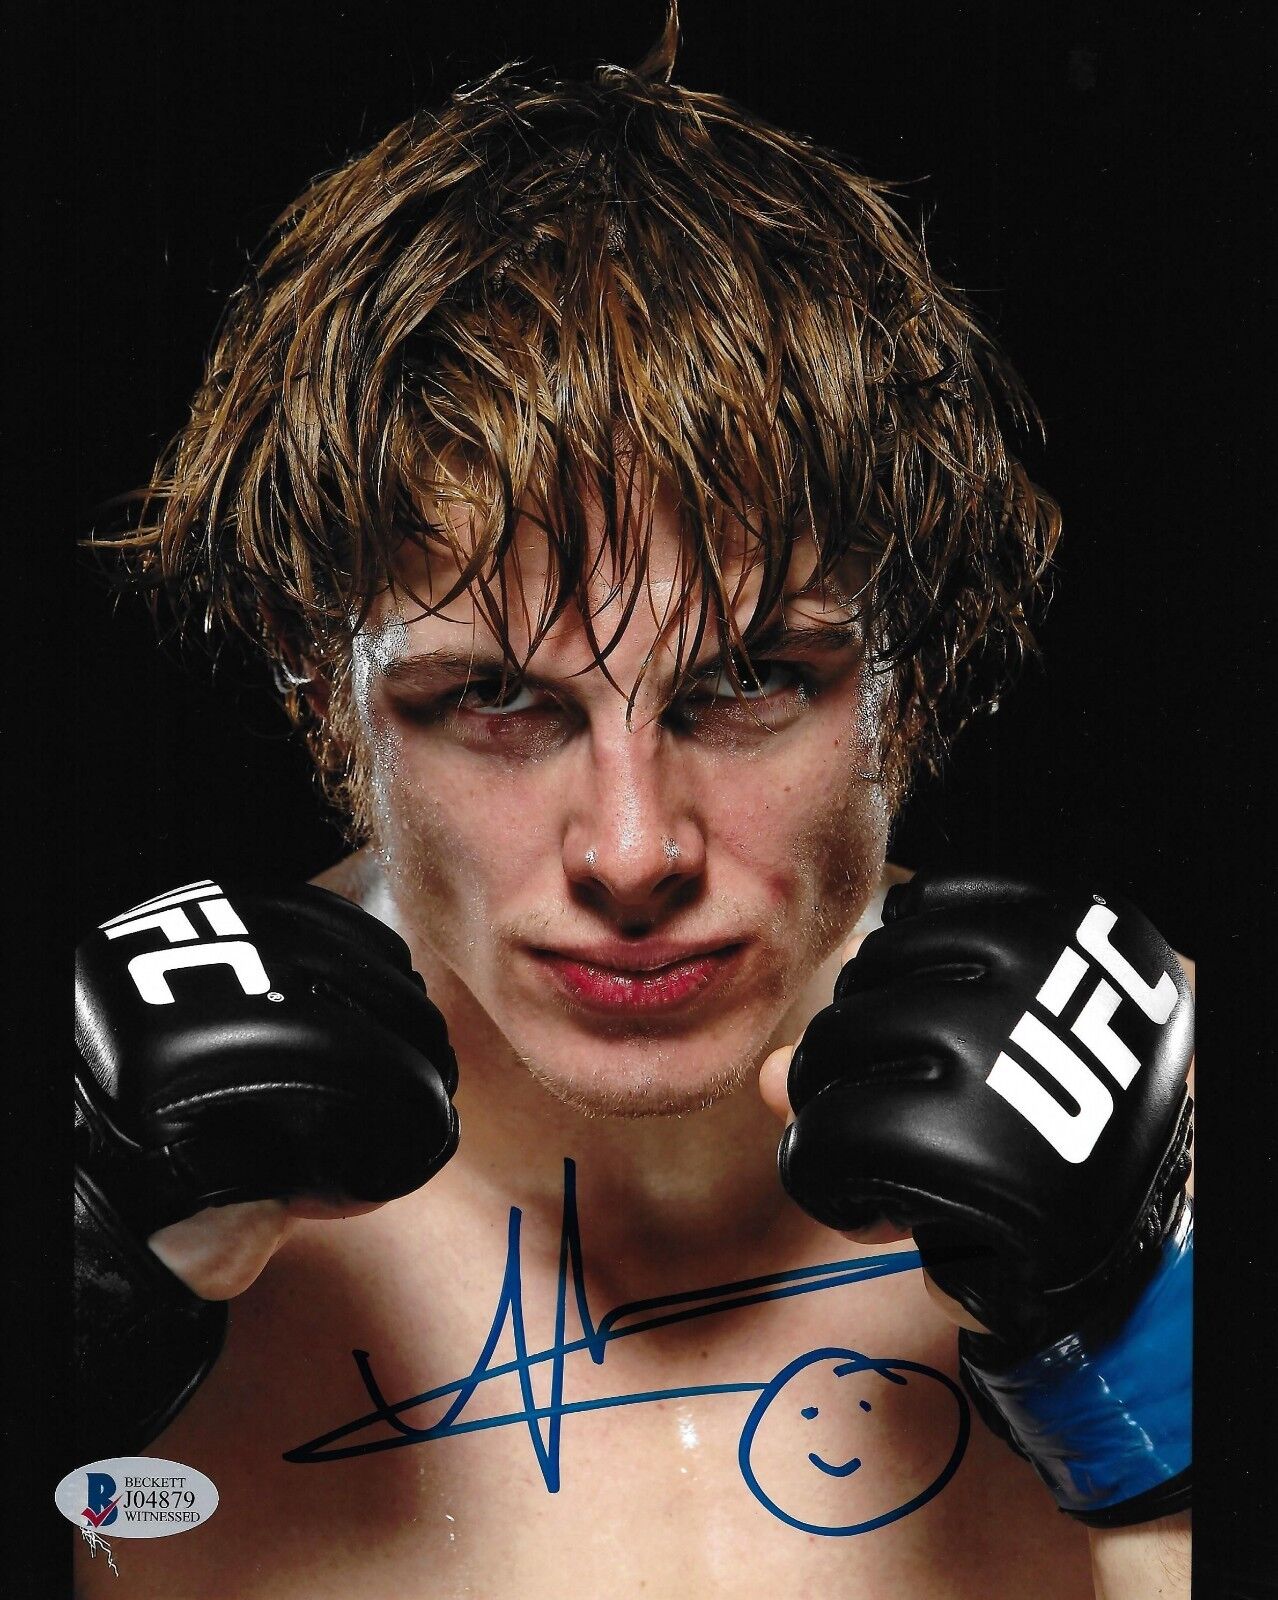 Matt Riddle Signed 8x10 Photo Poster painting BAS Beckett COA WWE NXT Wrestling UFC Autograph 10